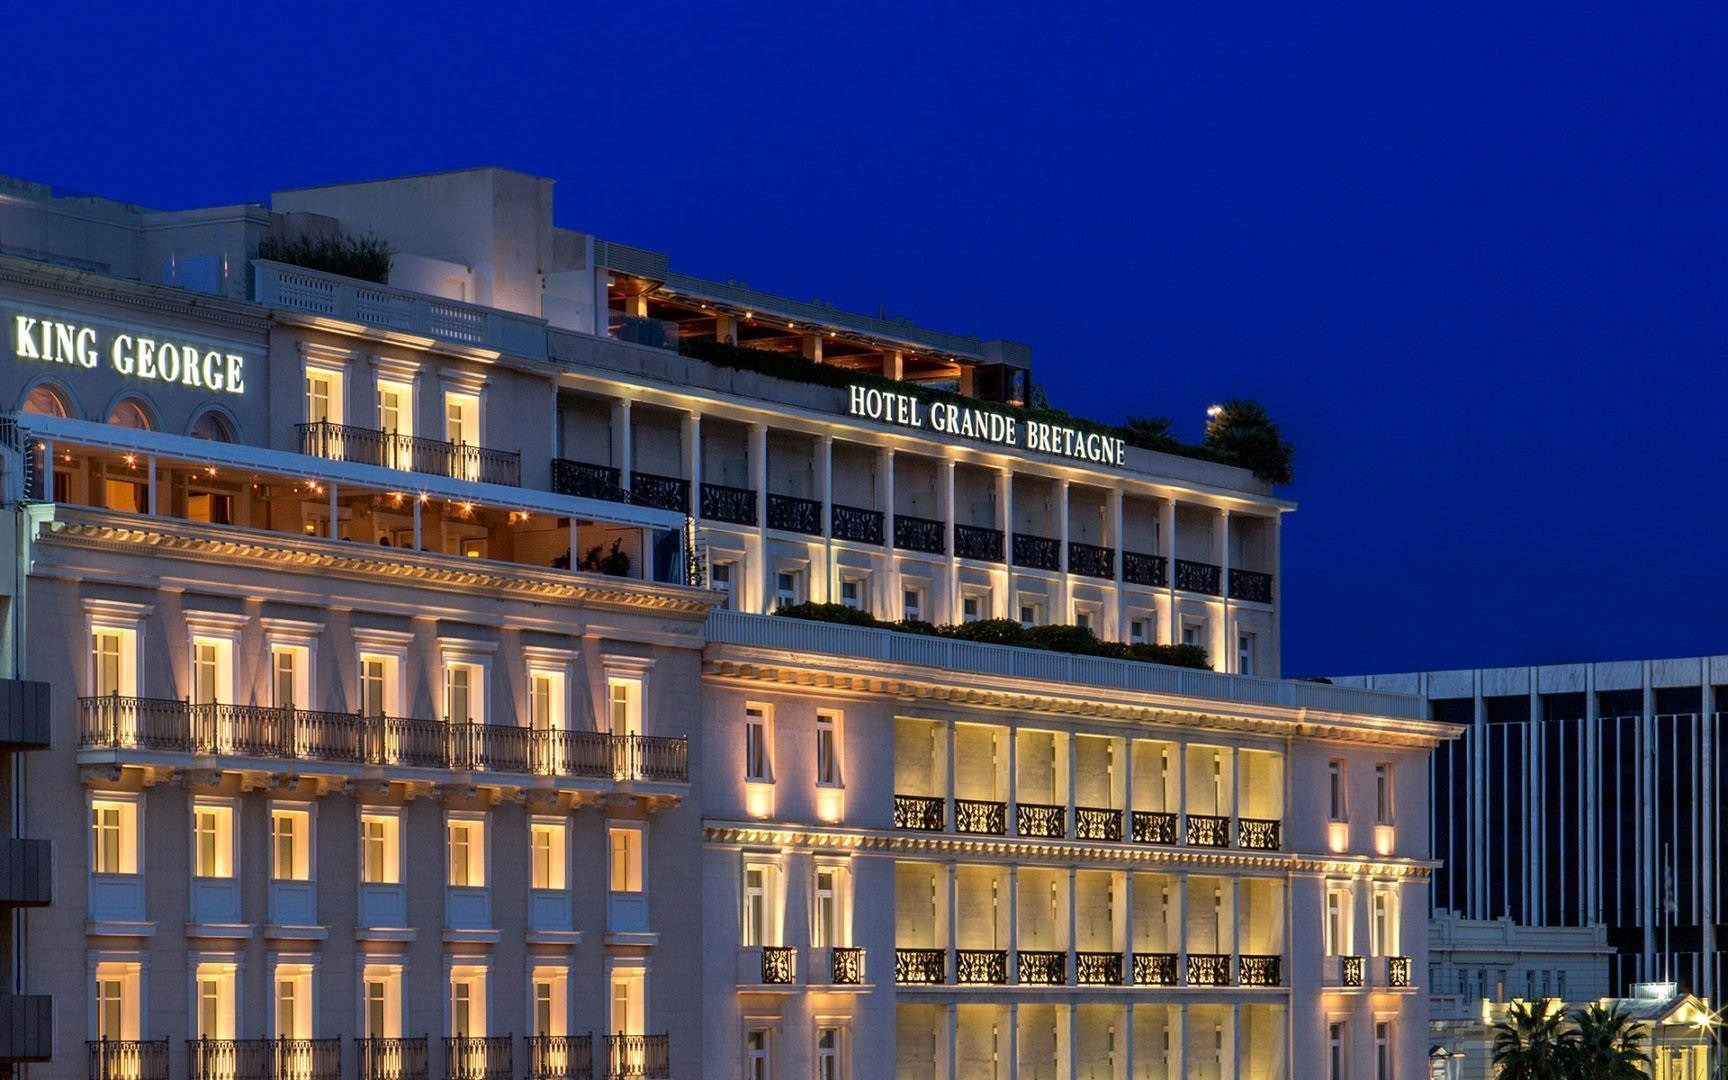 Ξενοδοχείο King George και Μεγάλη Βρεταννία © lampsa.gr